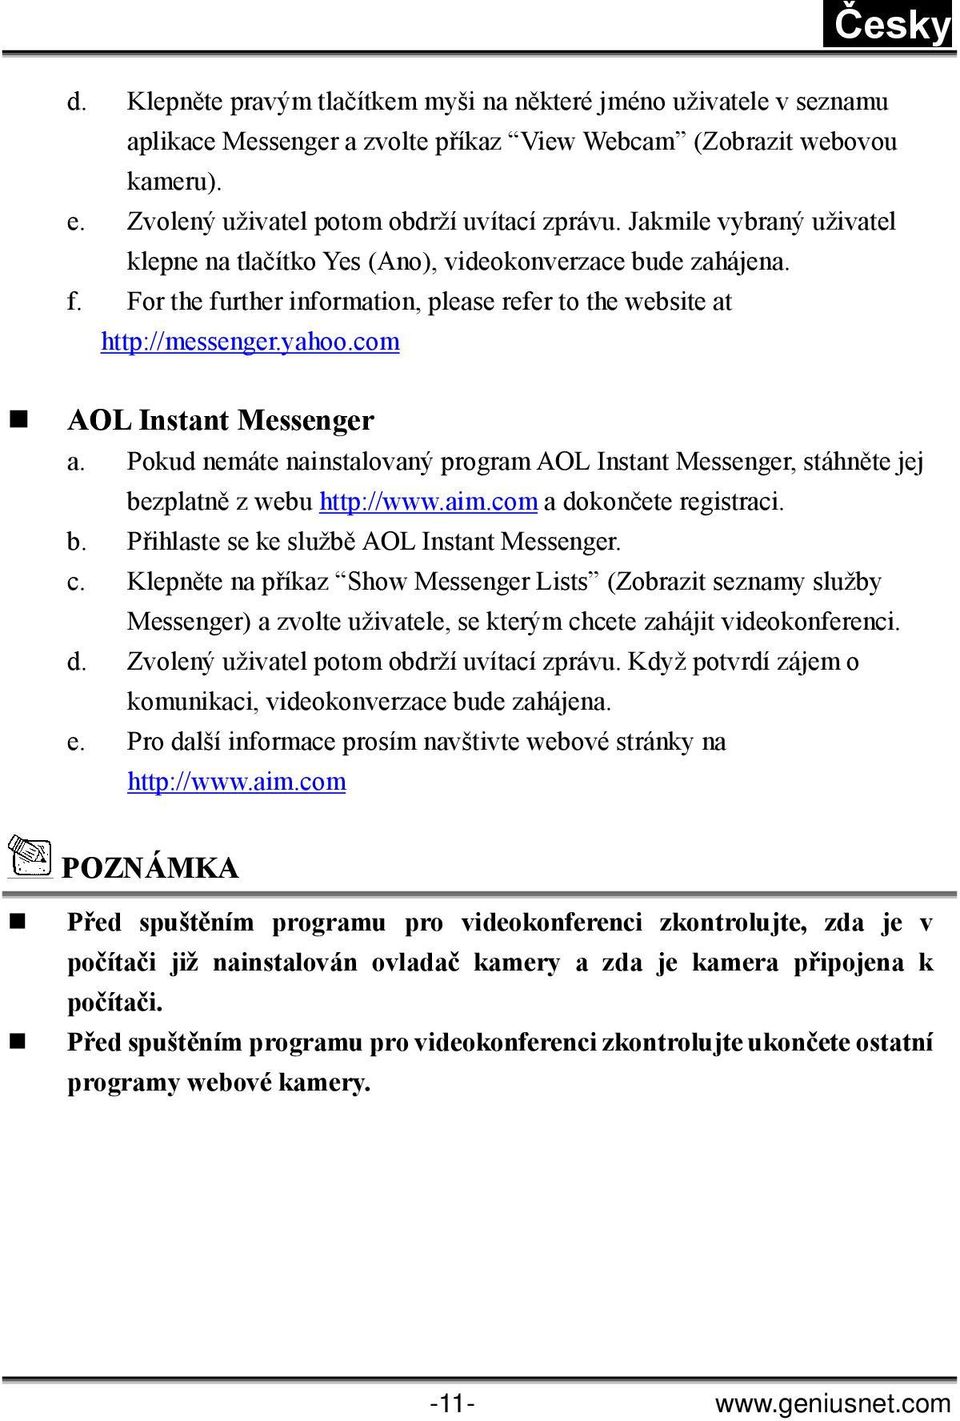 Pokud nemáte nainstalovaný program AOL Instant Messenger, stáhněte jej bezplatně z webu http://www.aim.com a dokončete registraci. b. Přihlaste se ke službě AOL Instant Messenger. c.